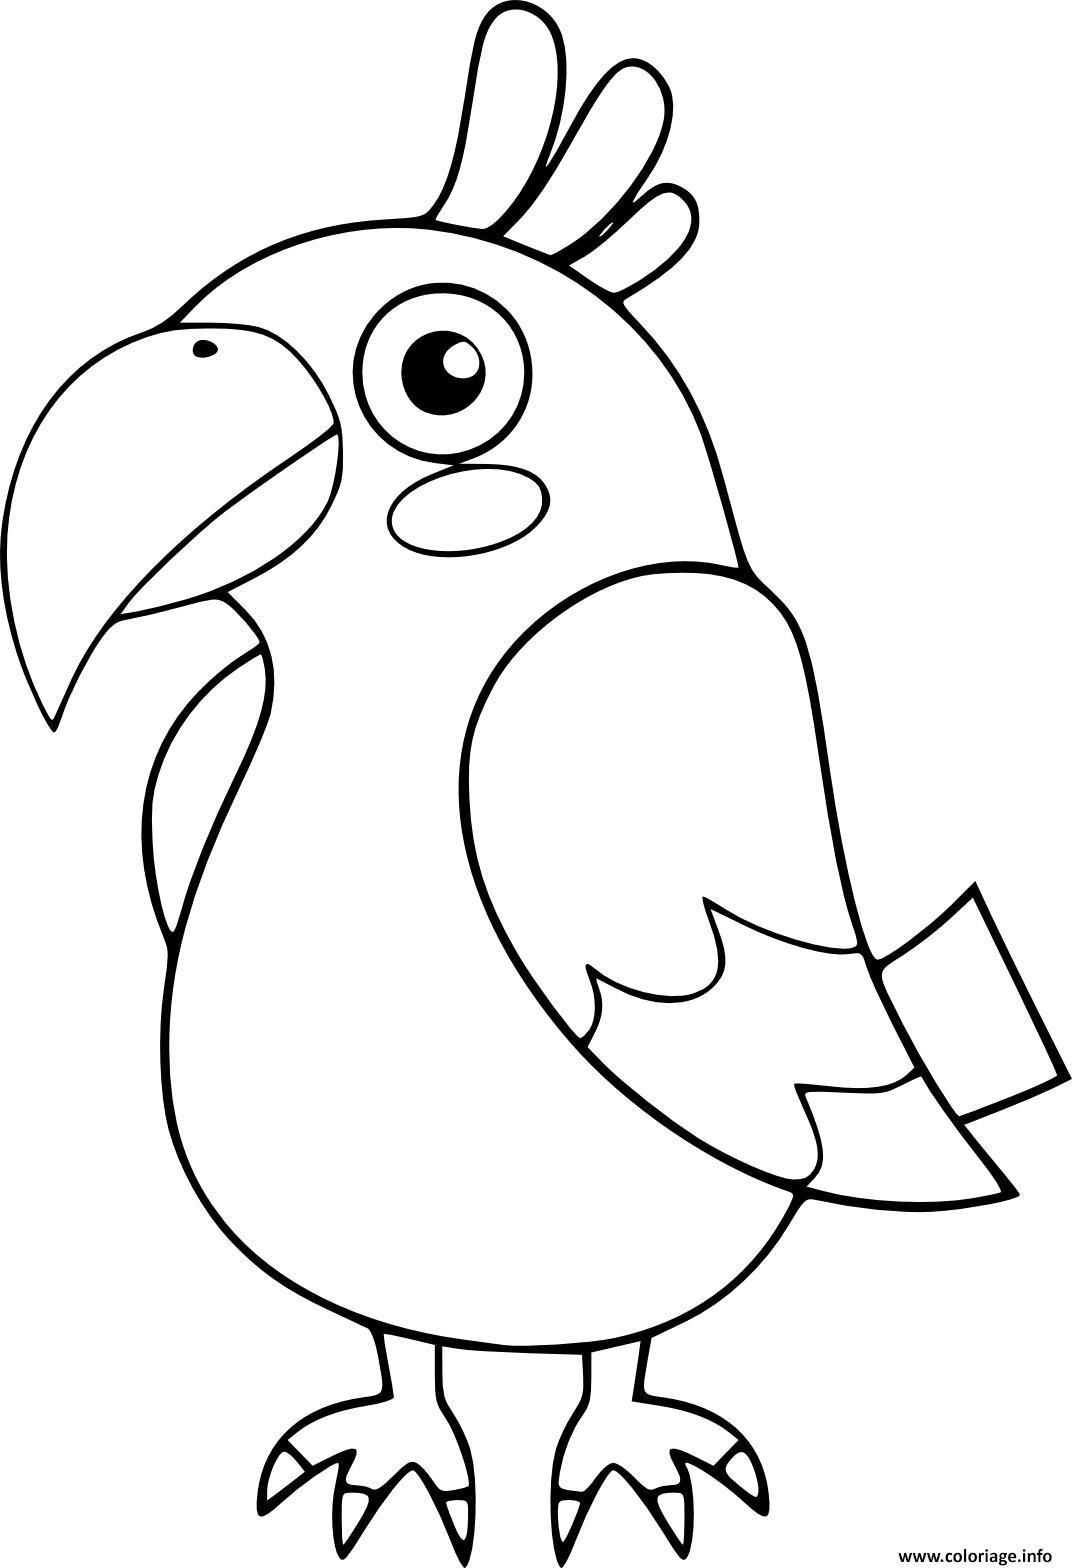 Coloriage Perroquet Oiseau Maternelle Pour Enfants Dessin destiné Coloriage Pour Bebe 